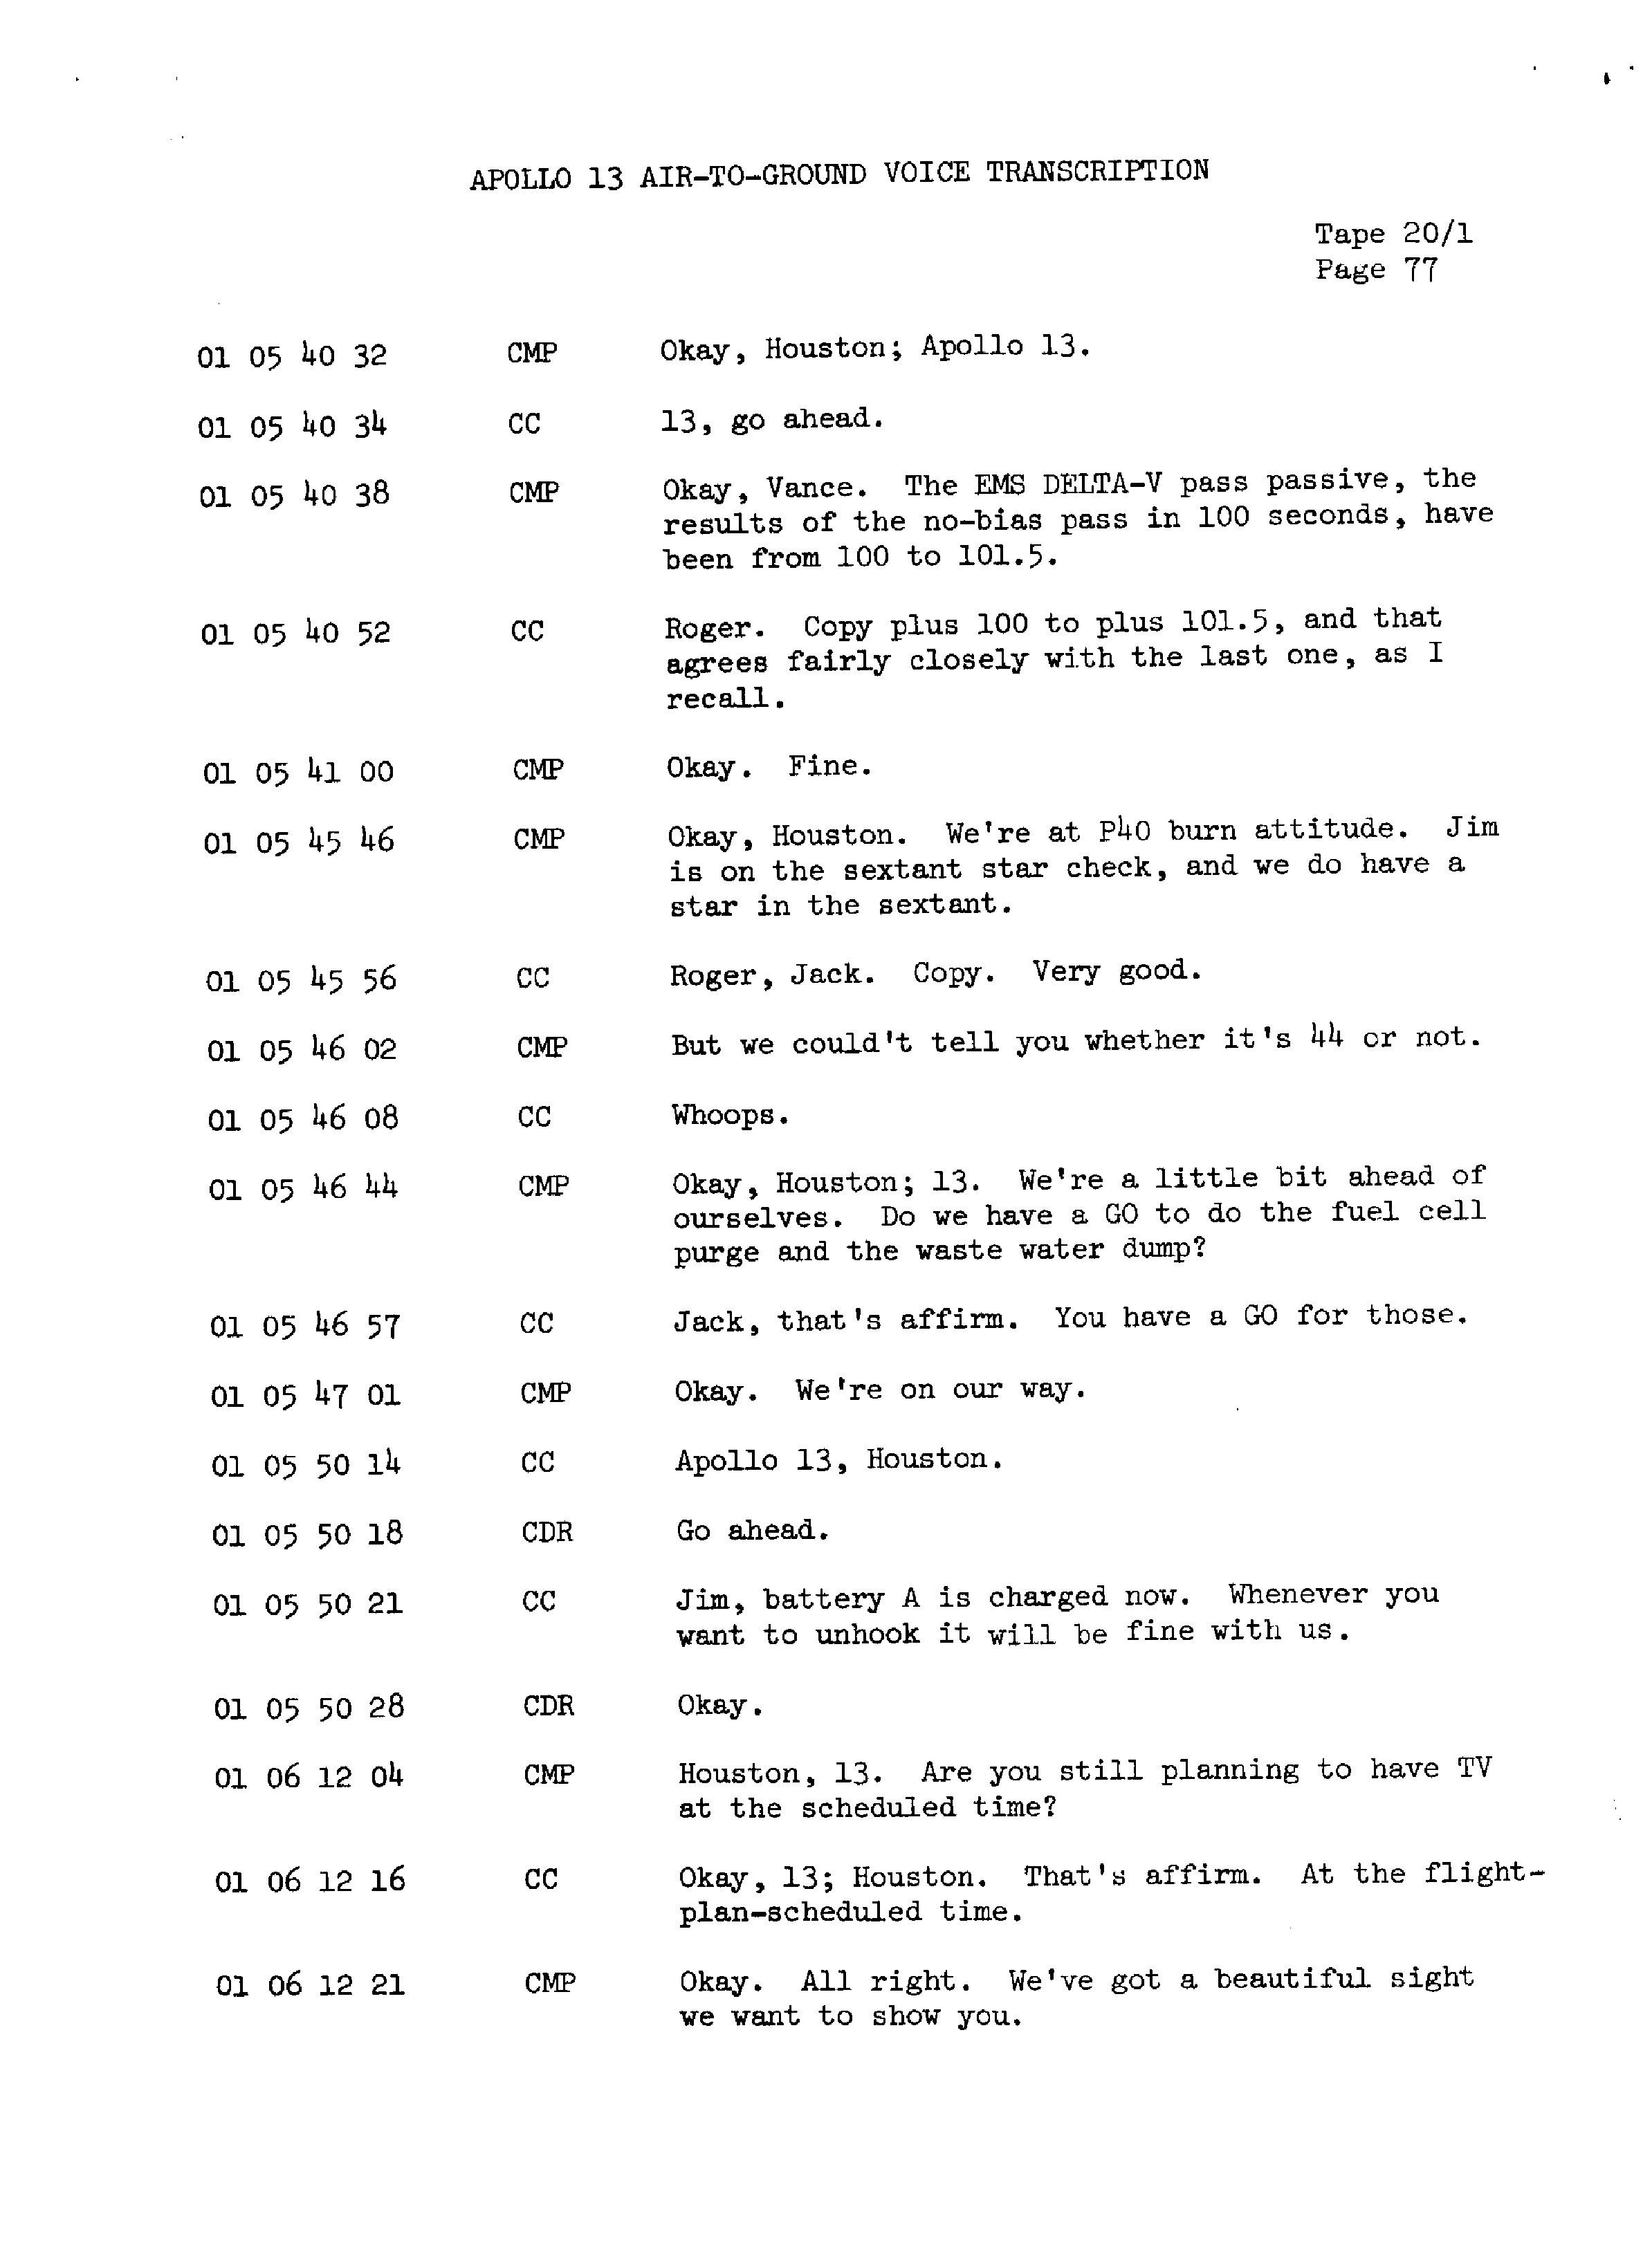 Page 84 of Apollo 13’s original transcript